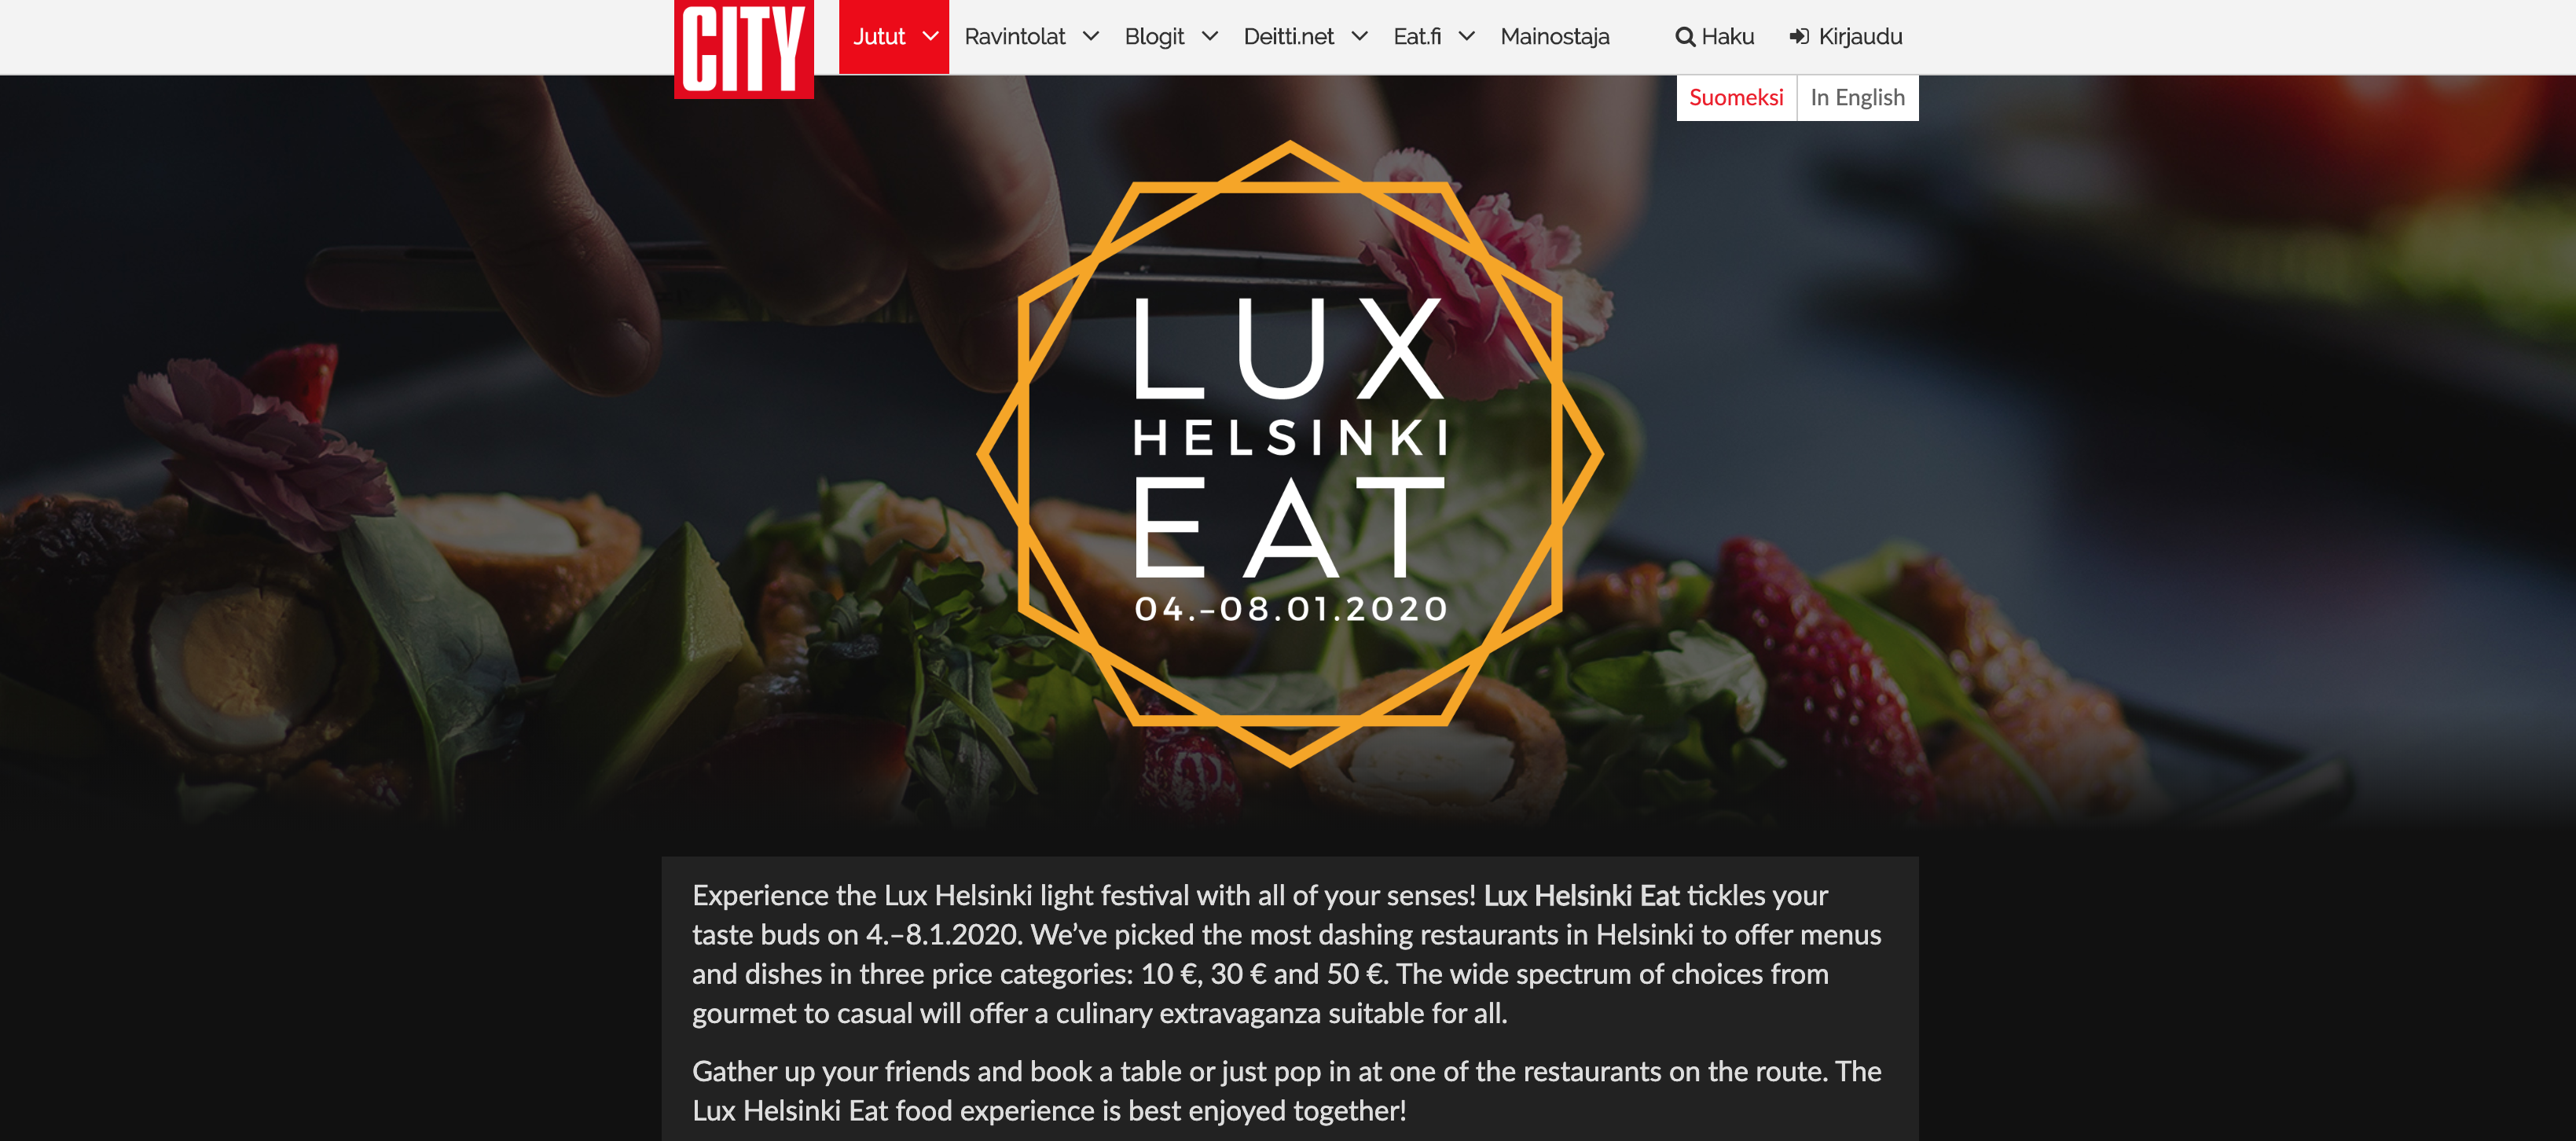 Lux Helsinki Eat